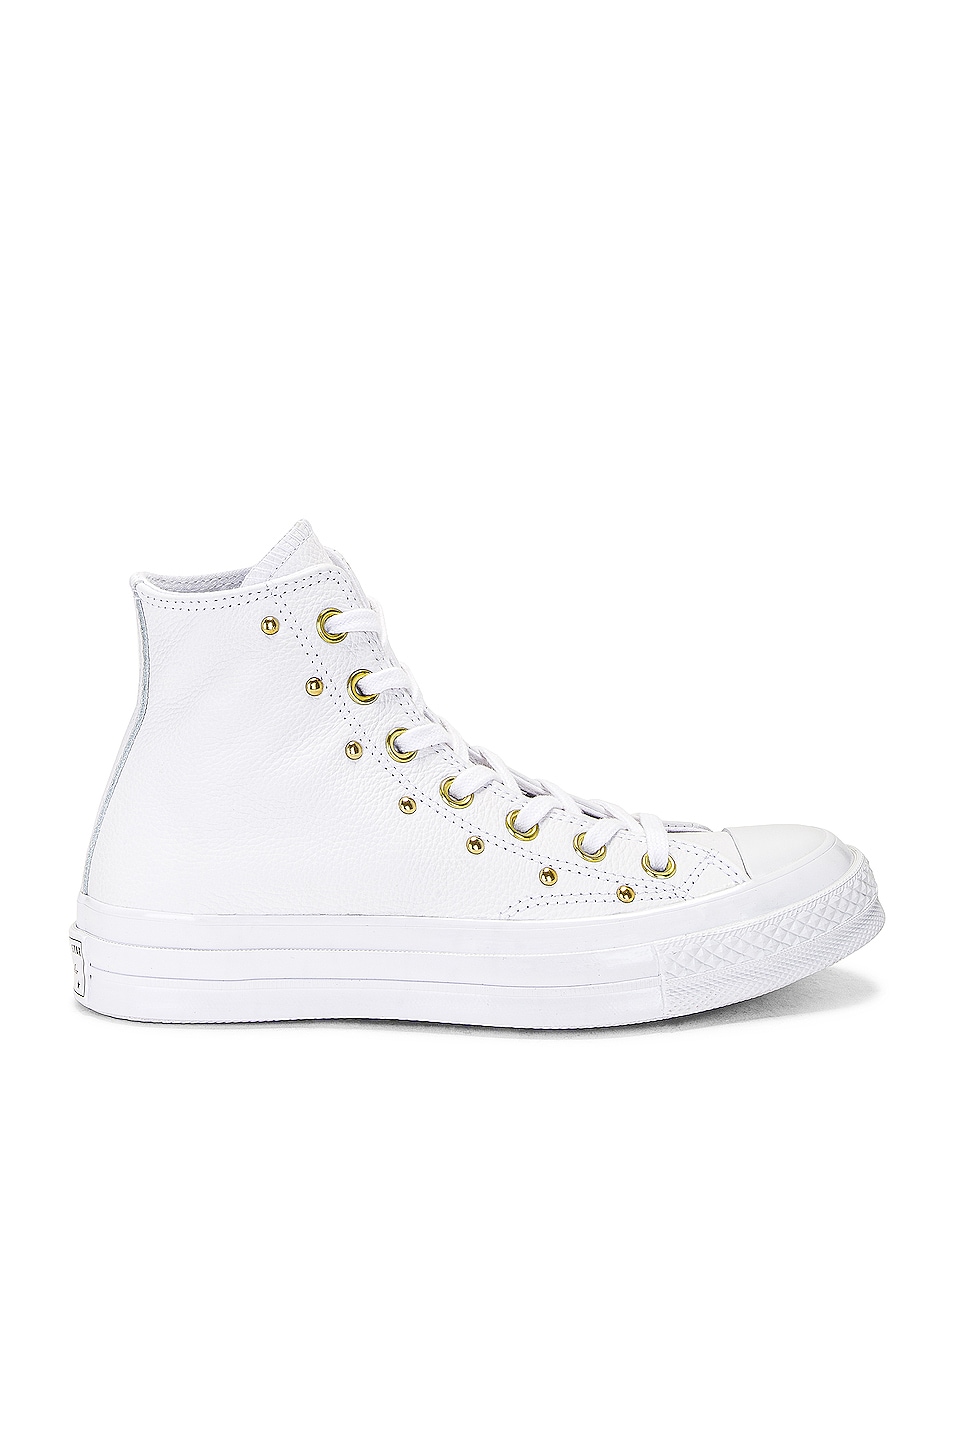 Кроссовки Converse Chuck 70, цвет White, White, & Gold